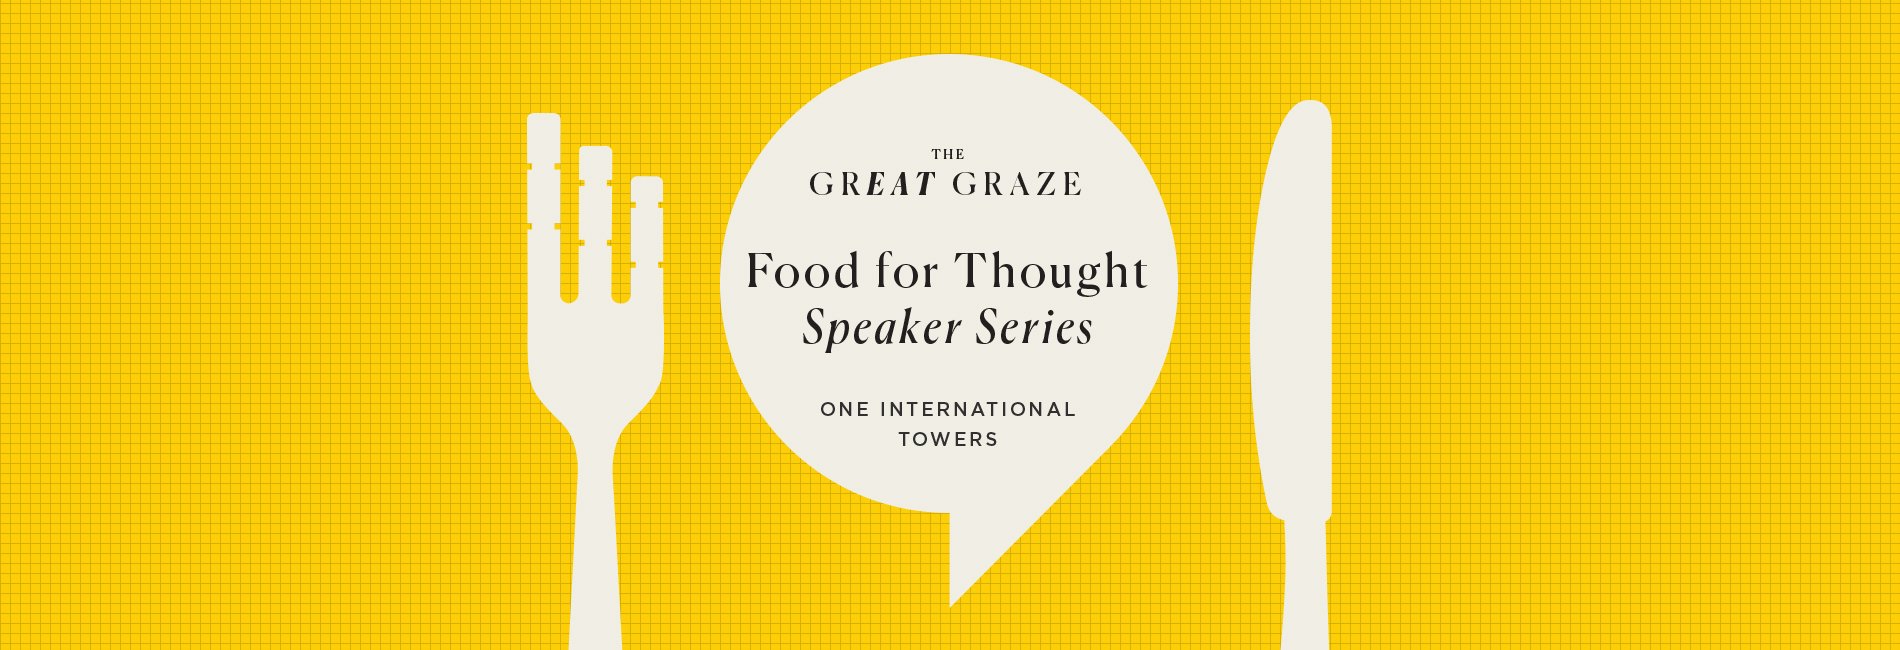 GreatGraze-SpeakerSeries-banner-1900-x-650-v2.jpg